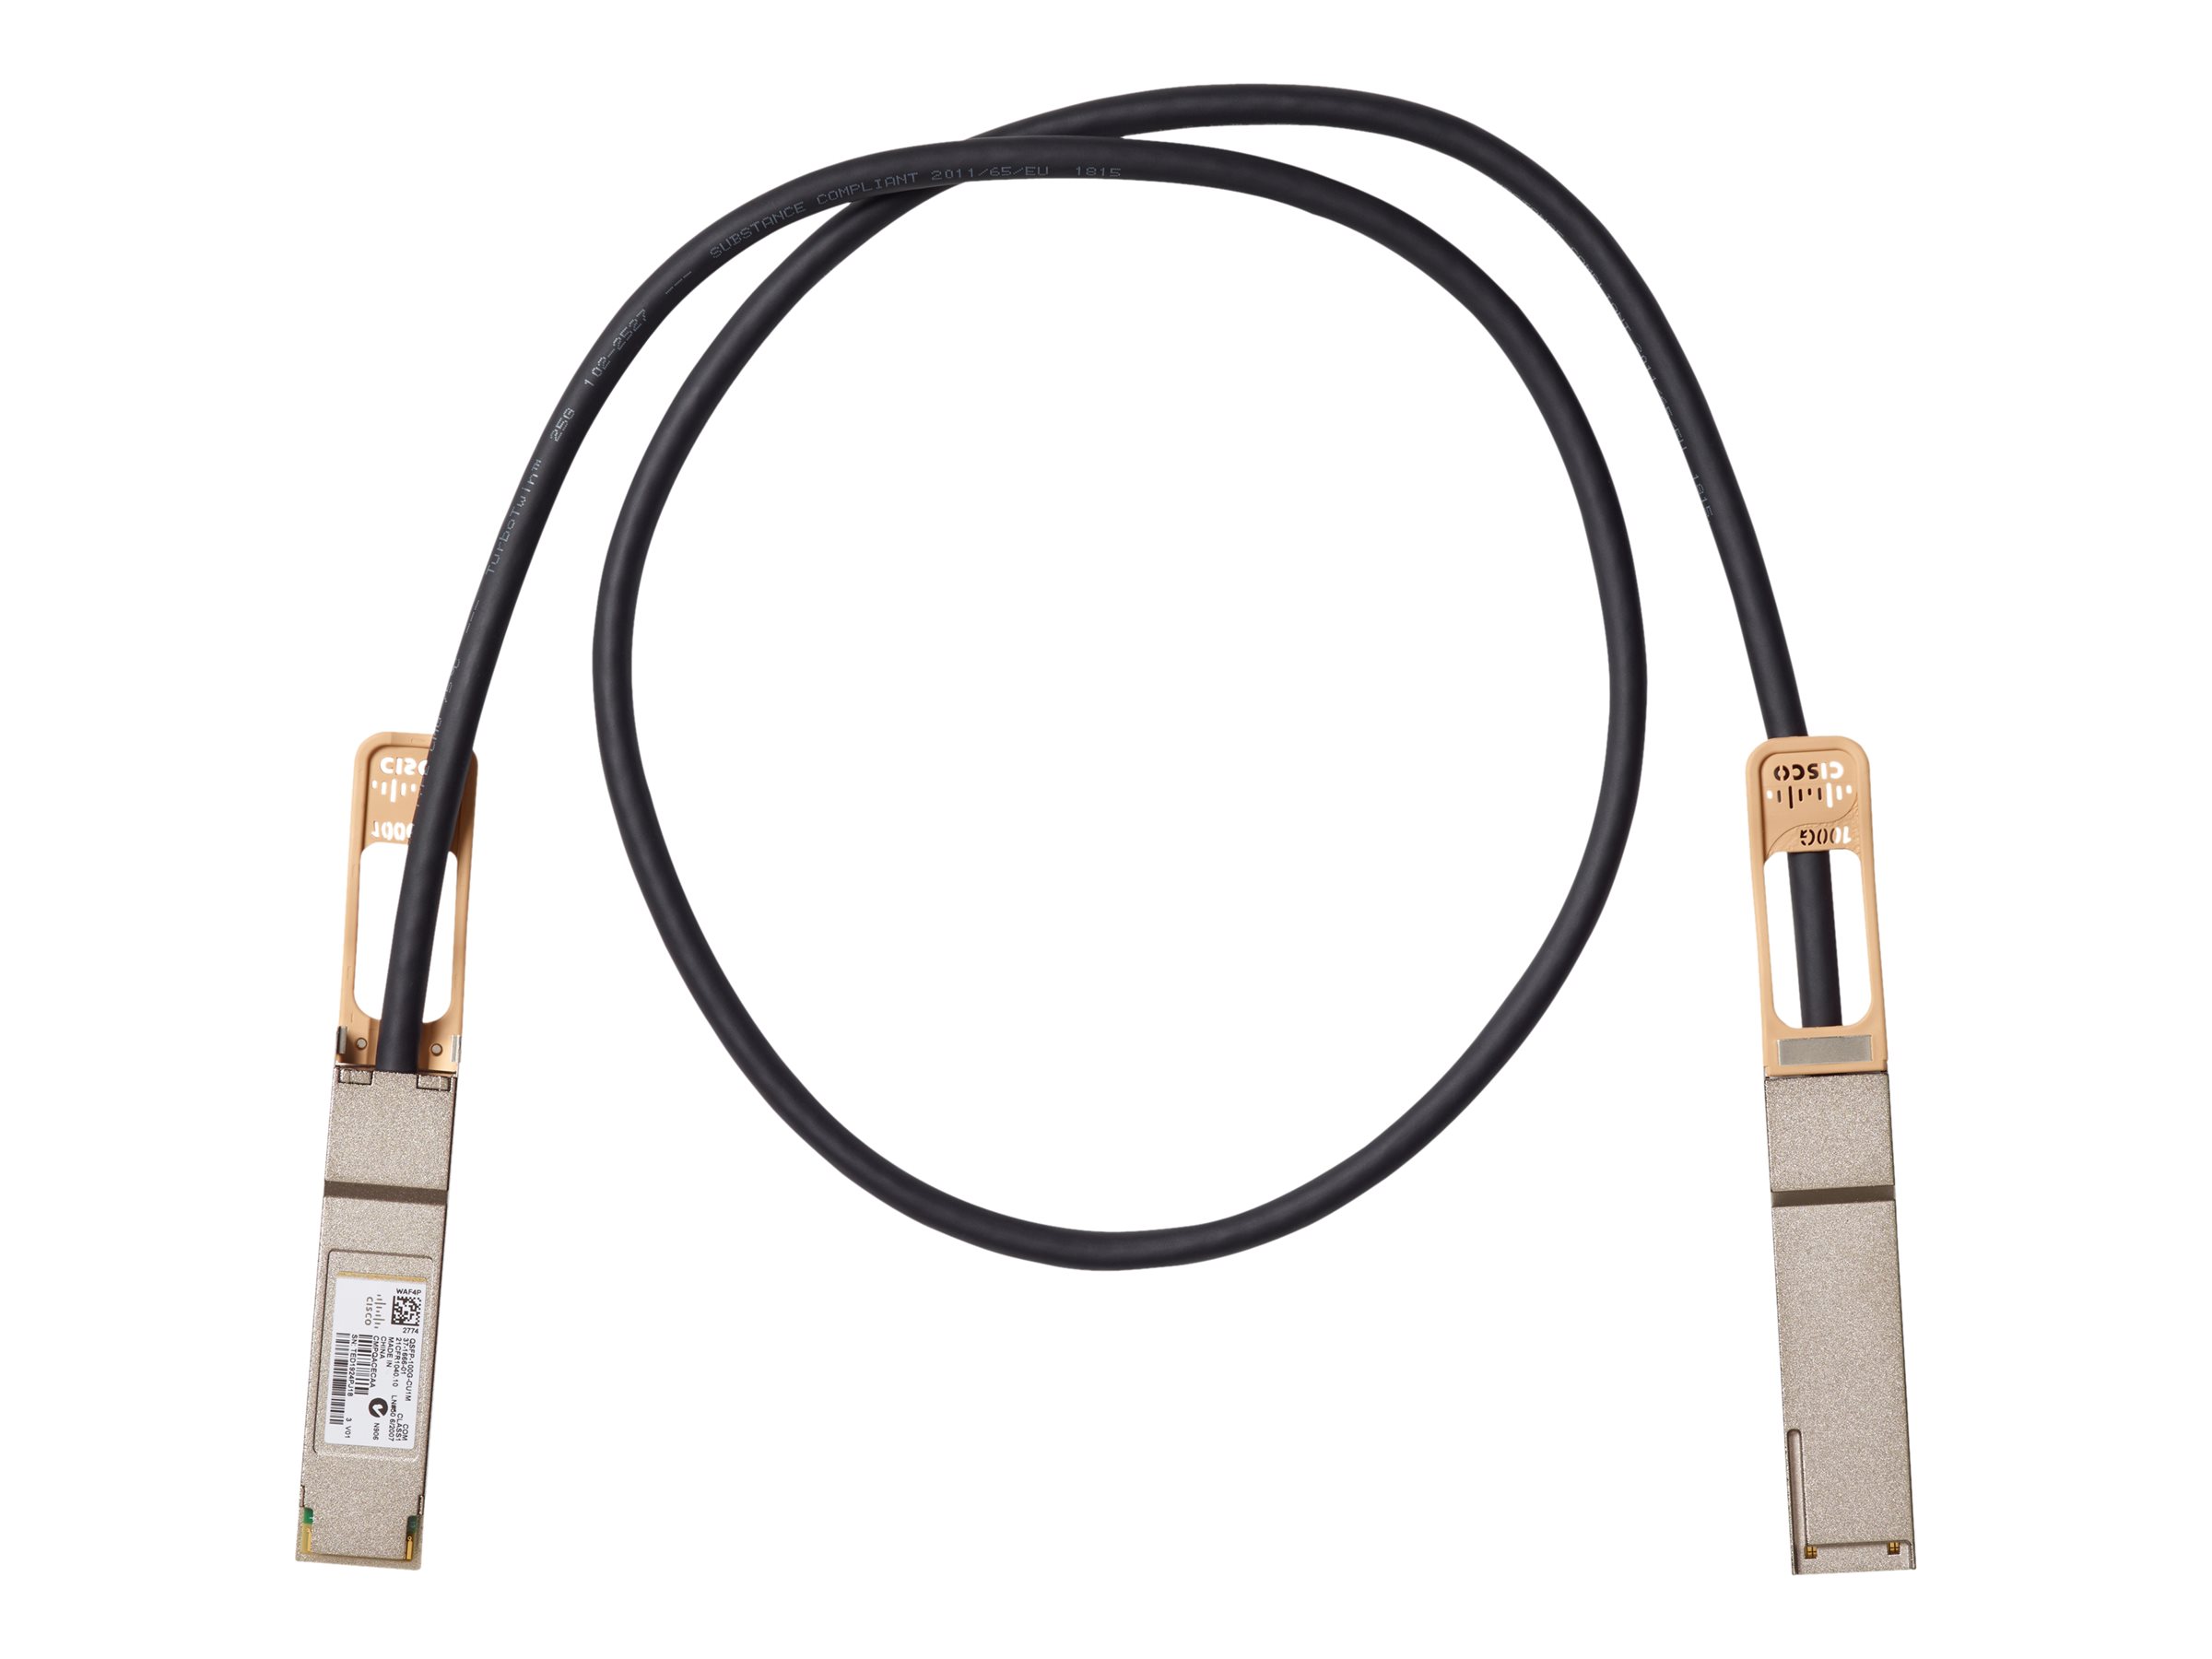 Cisco Copper Cable - 100GBase Direktanschlusskabel - QSFP (M) zu QSFP (M) - 5 m - passiv - wiederaufbereitet